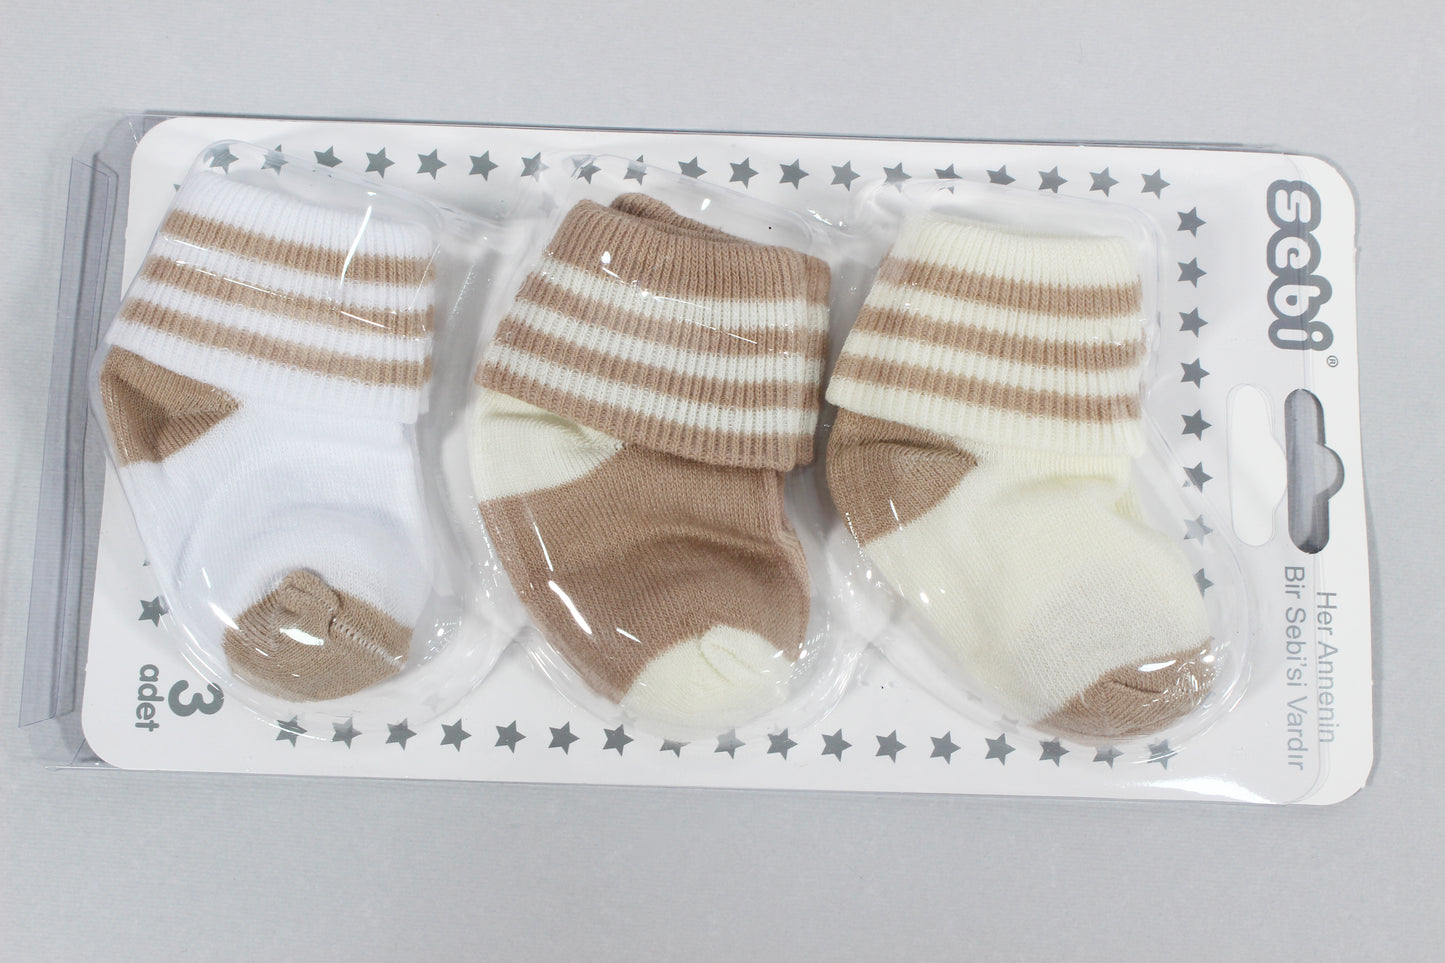 Newborn socks